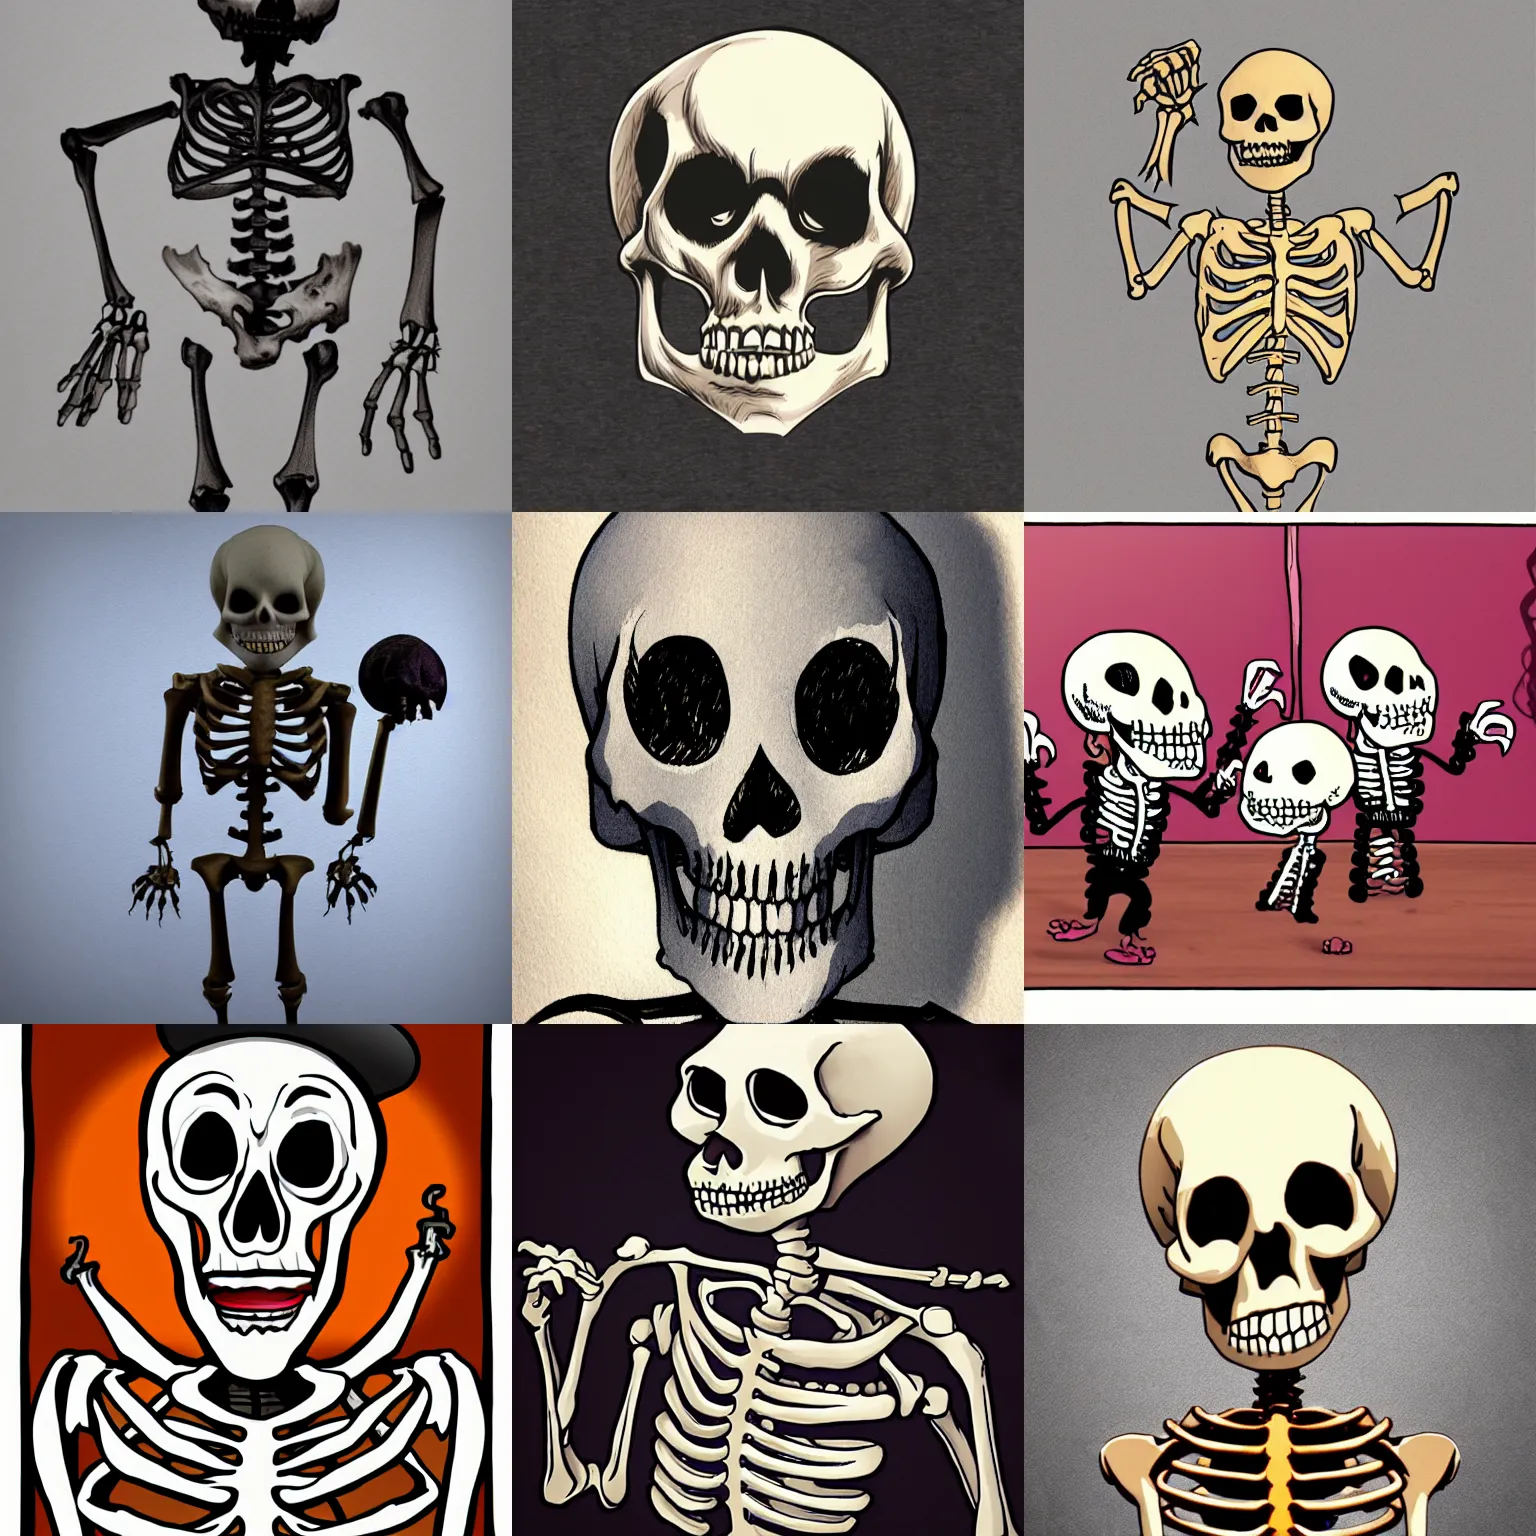 Prompt: the spookiest scariest skeleton